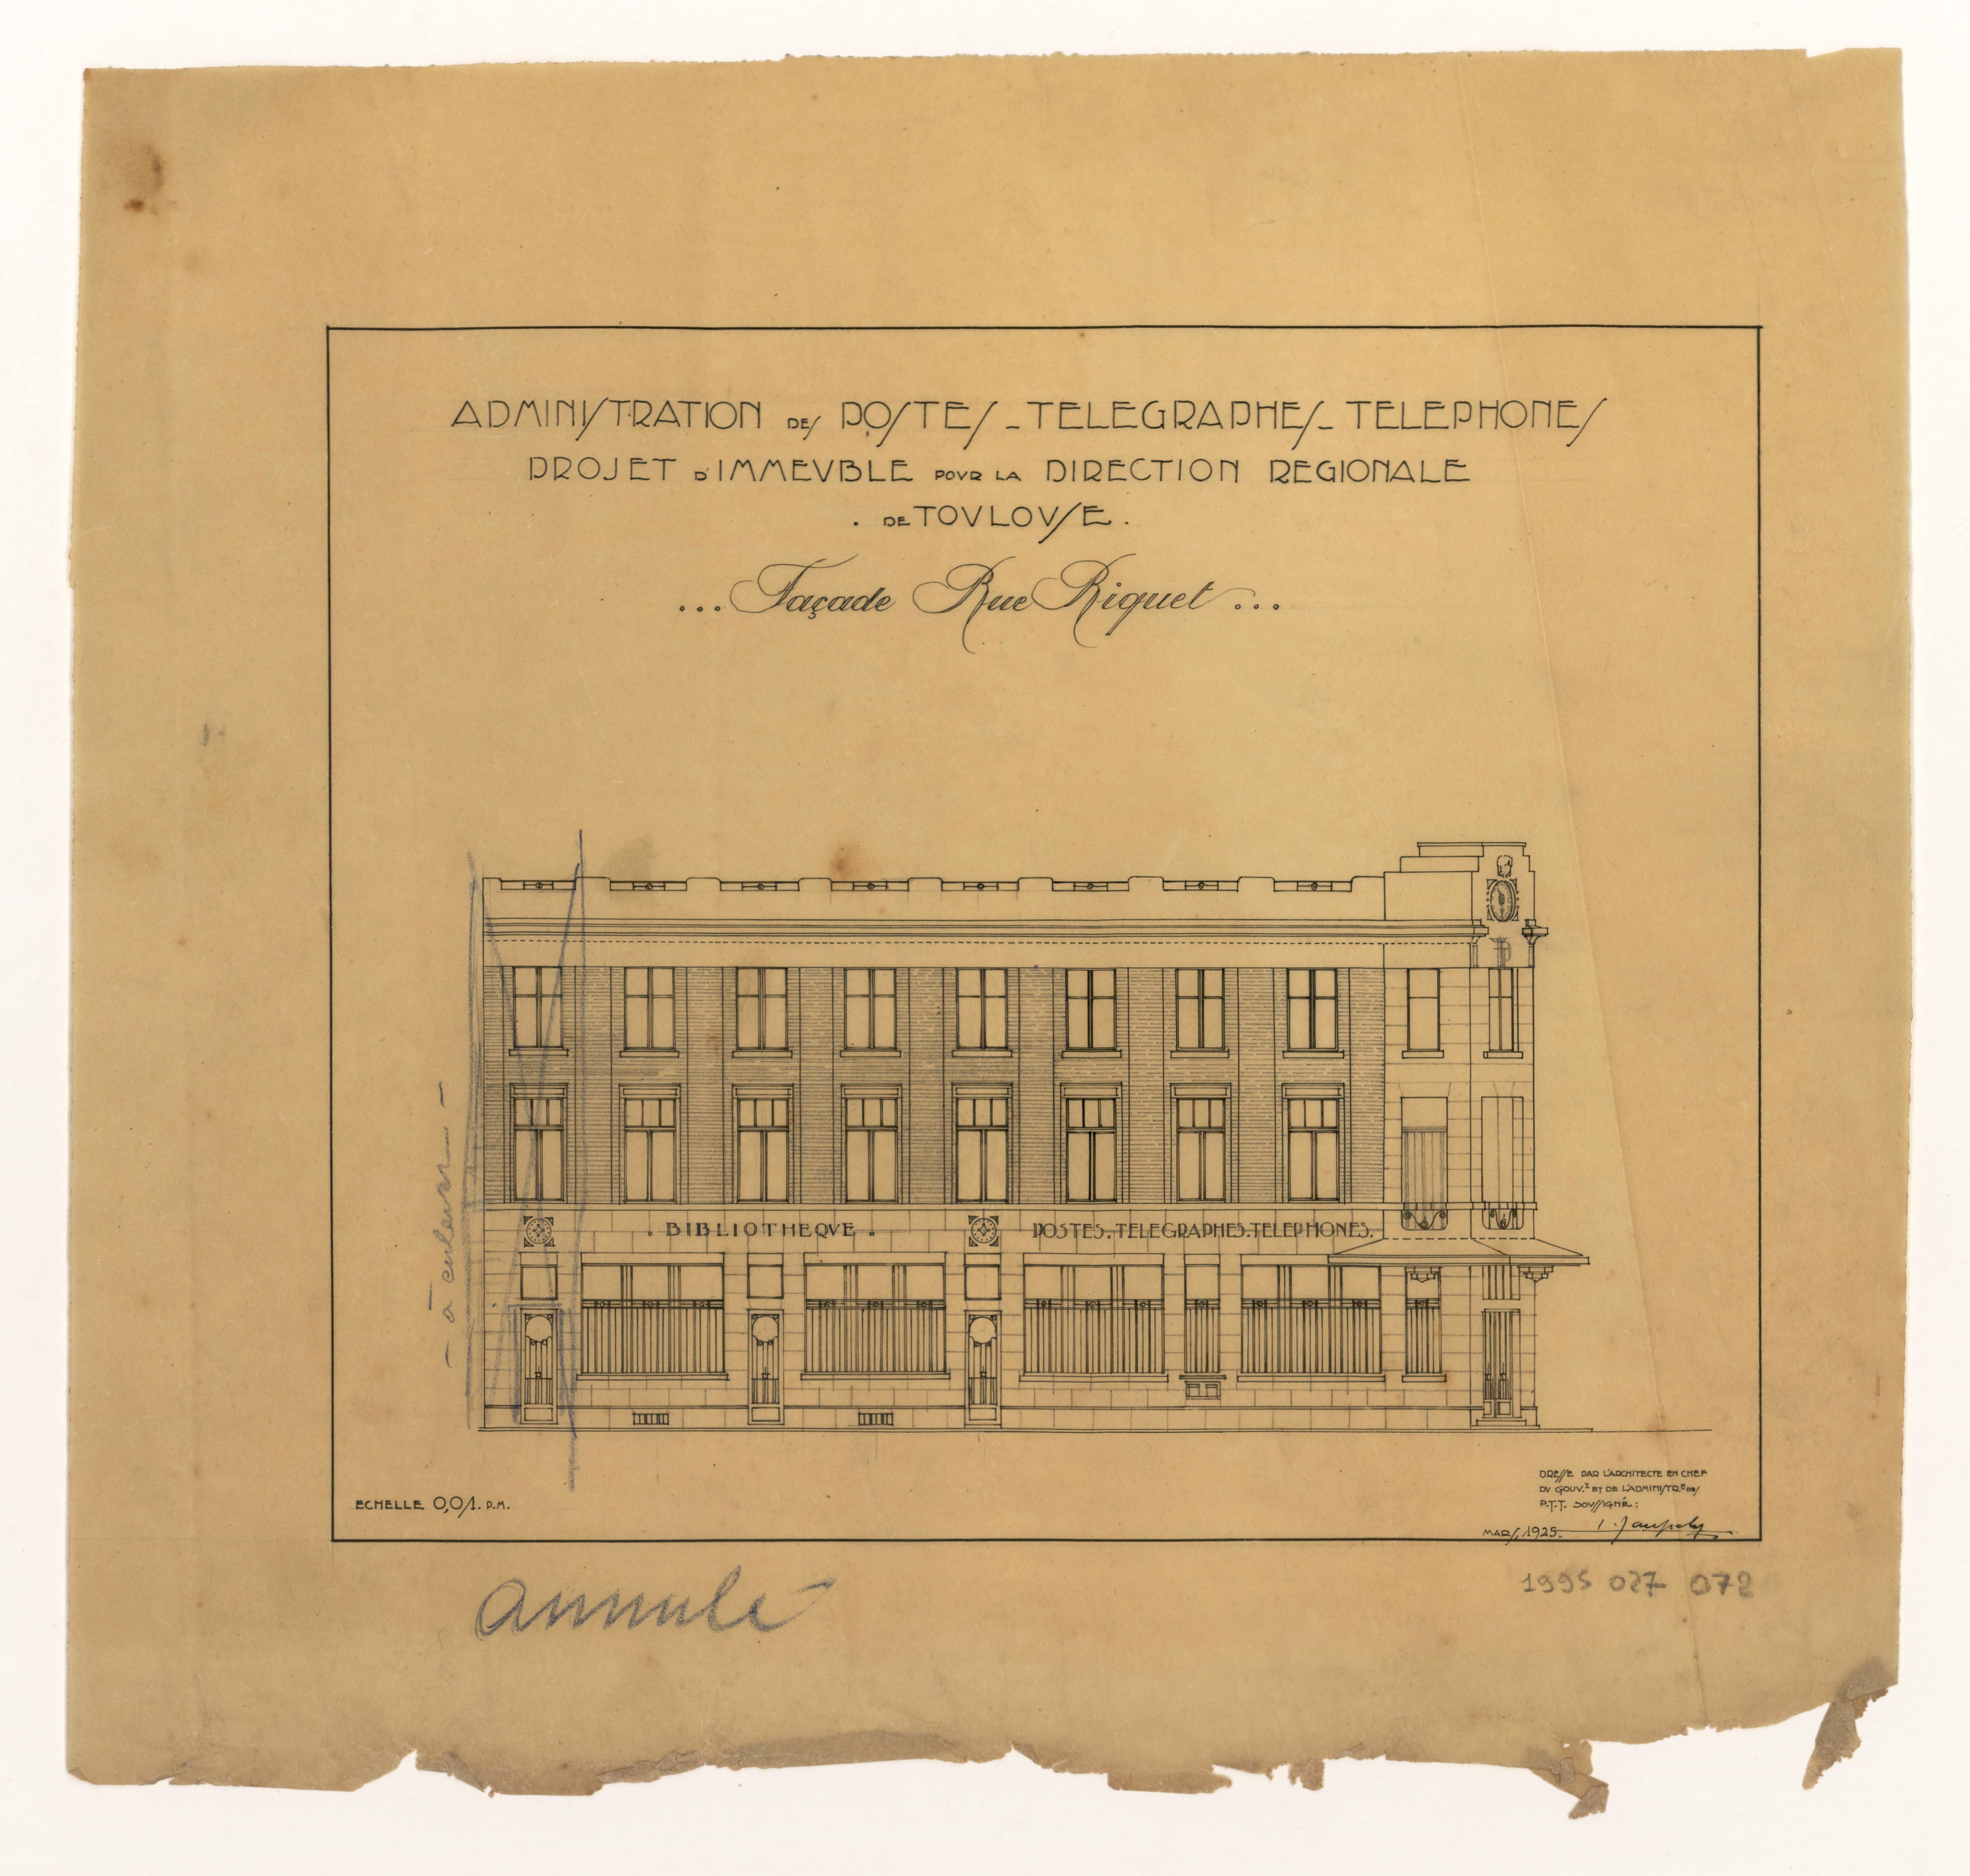 Projet de façade pour la direction régionale des PTT à Toulouse réalisé par Léon Jaussely. Dessin au crayon à papier et encre sur calque, mars 1925. ANMT 1997 25 72.